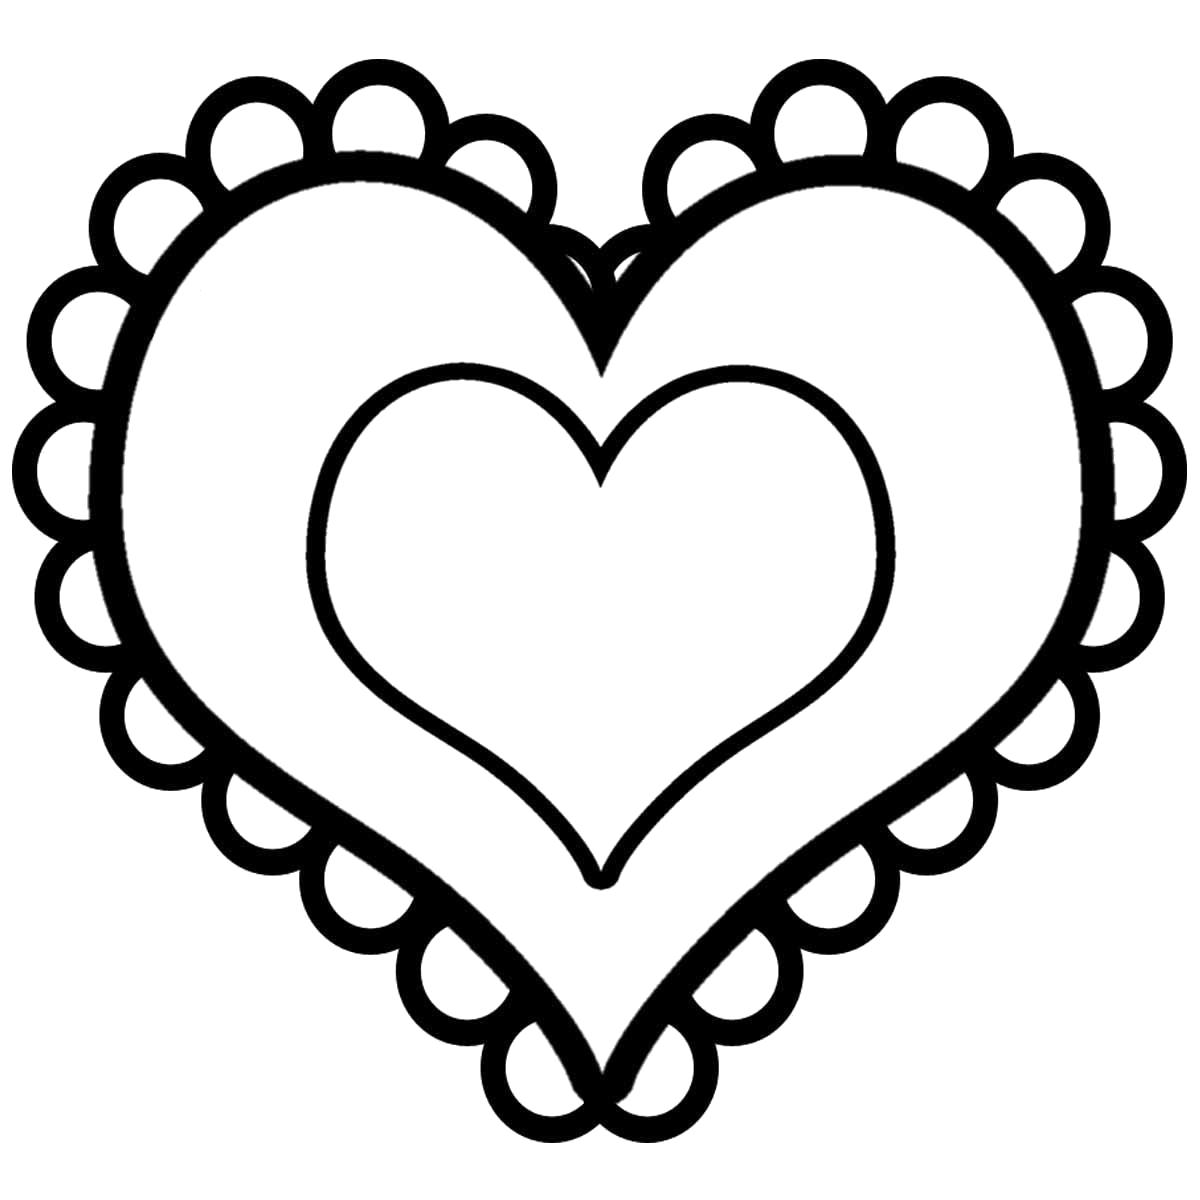 Название: Раскраска Раскраски шаблоны сердечек для вырезания  двойное сердце с кружевом для вырезания из бумаги. Категория: День святого валентина. Теги: 14 февраля, сердце.